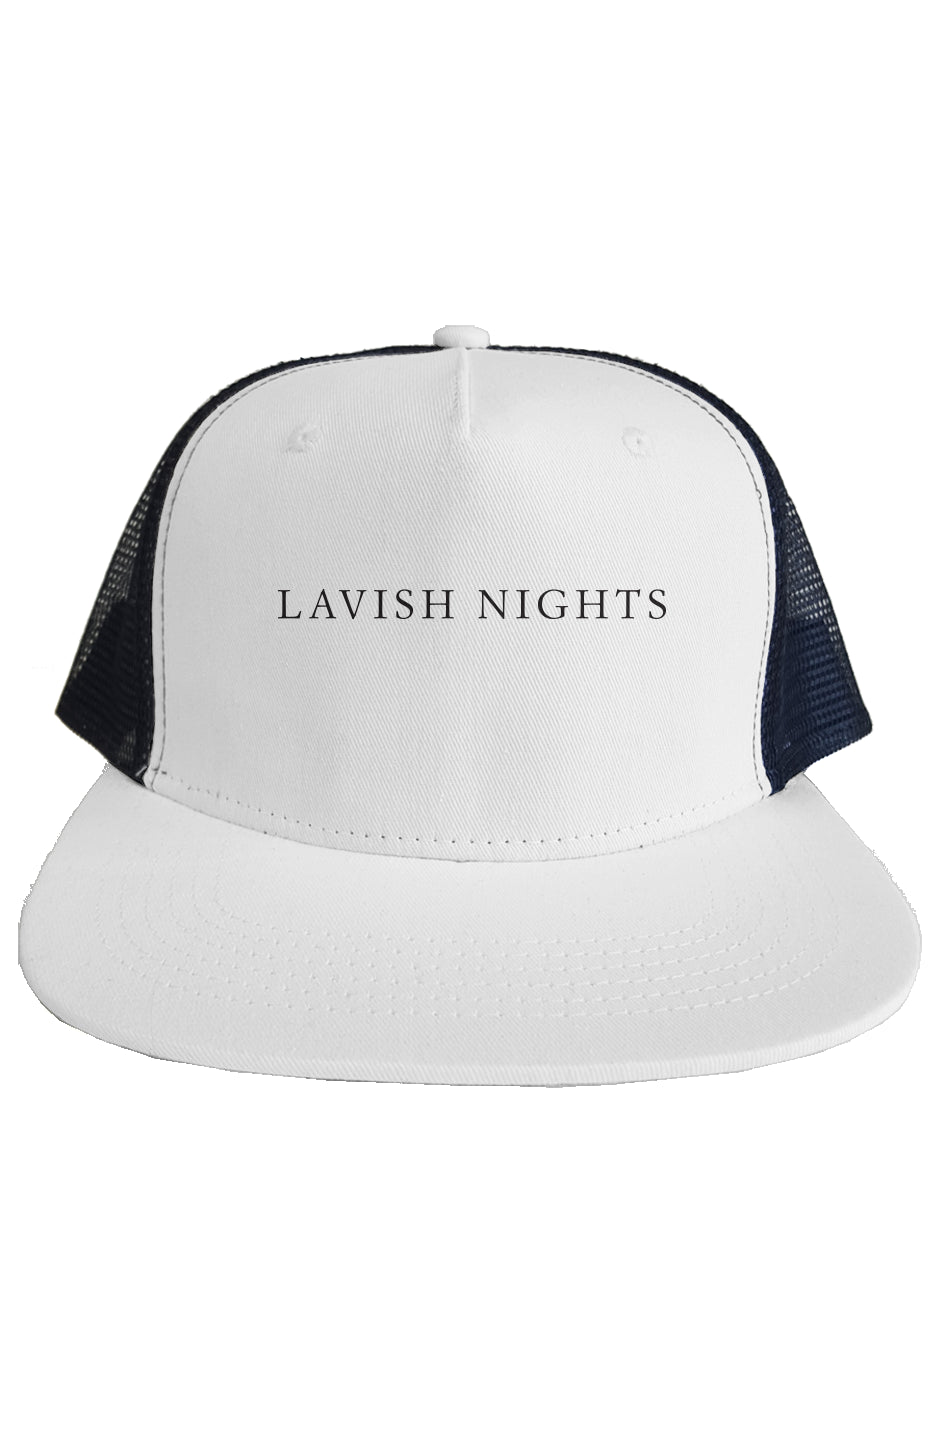 1 Lavish Nights Trucker Hat